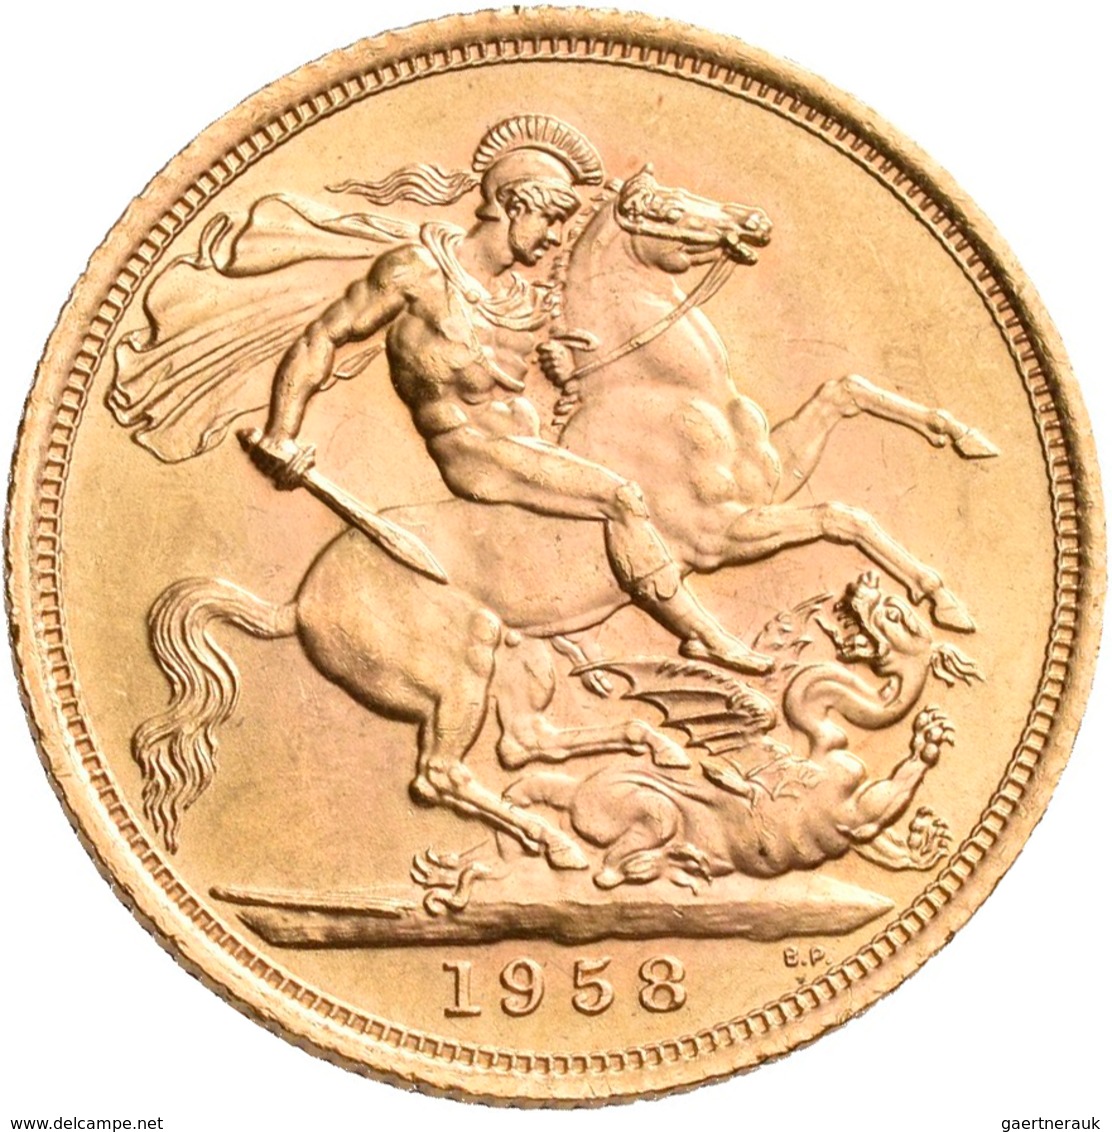 Großbritannien - Anlagegold: Elizabeth II. 1952-,: Lot 5 x 1 Sovereign 1958, KM# 908. Gewicht je 8,0